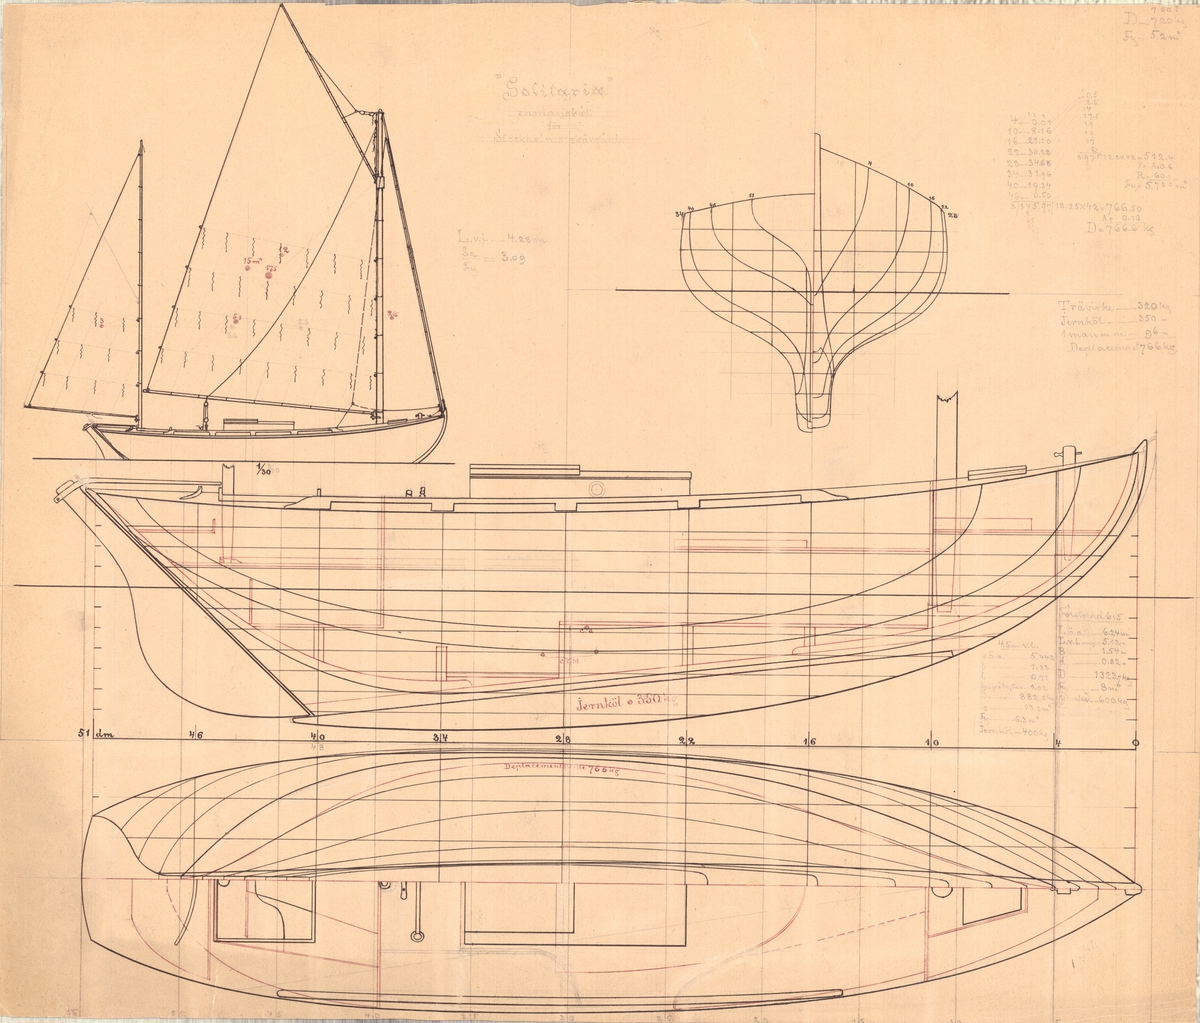 Tvåmastad segelbåt
Spantruta, rigg-, profil- och linjeritning